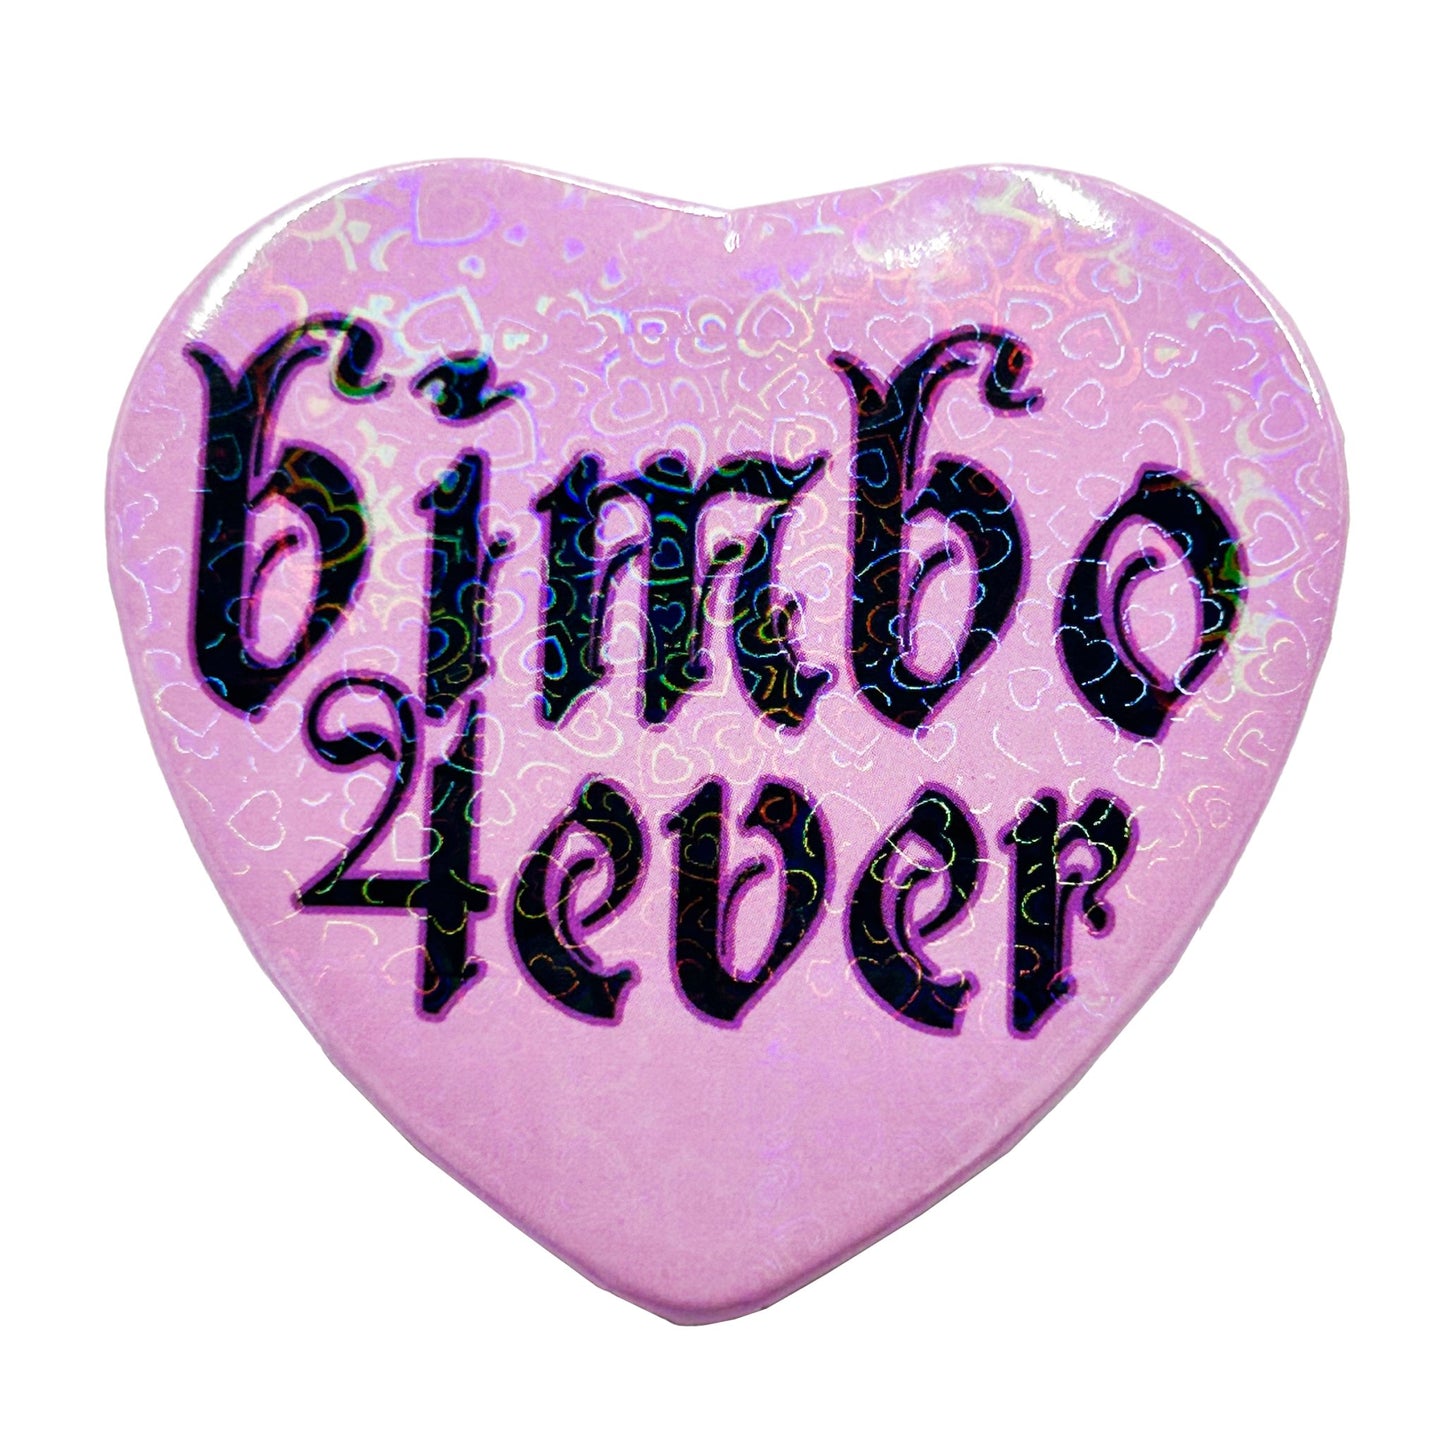 Bimbo 4ever Button - CHERRYCHOKE